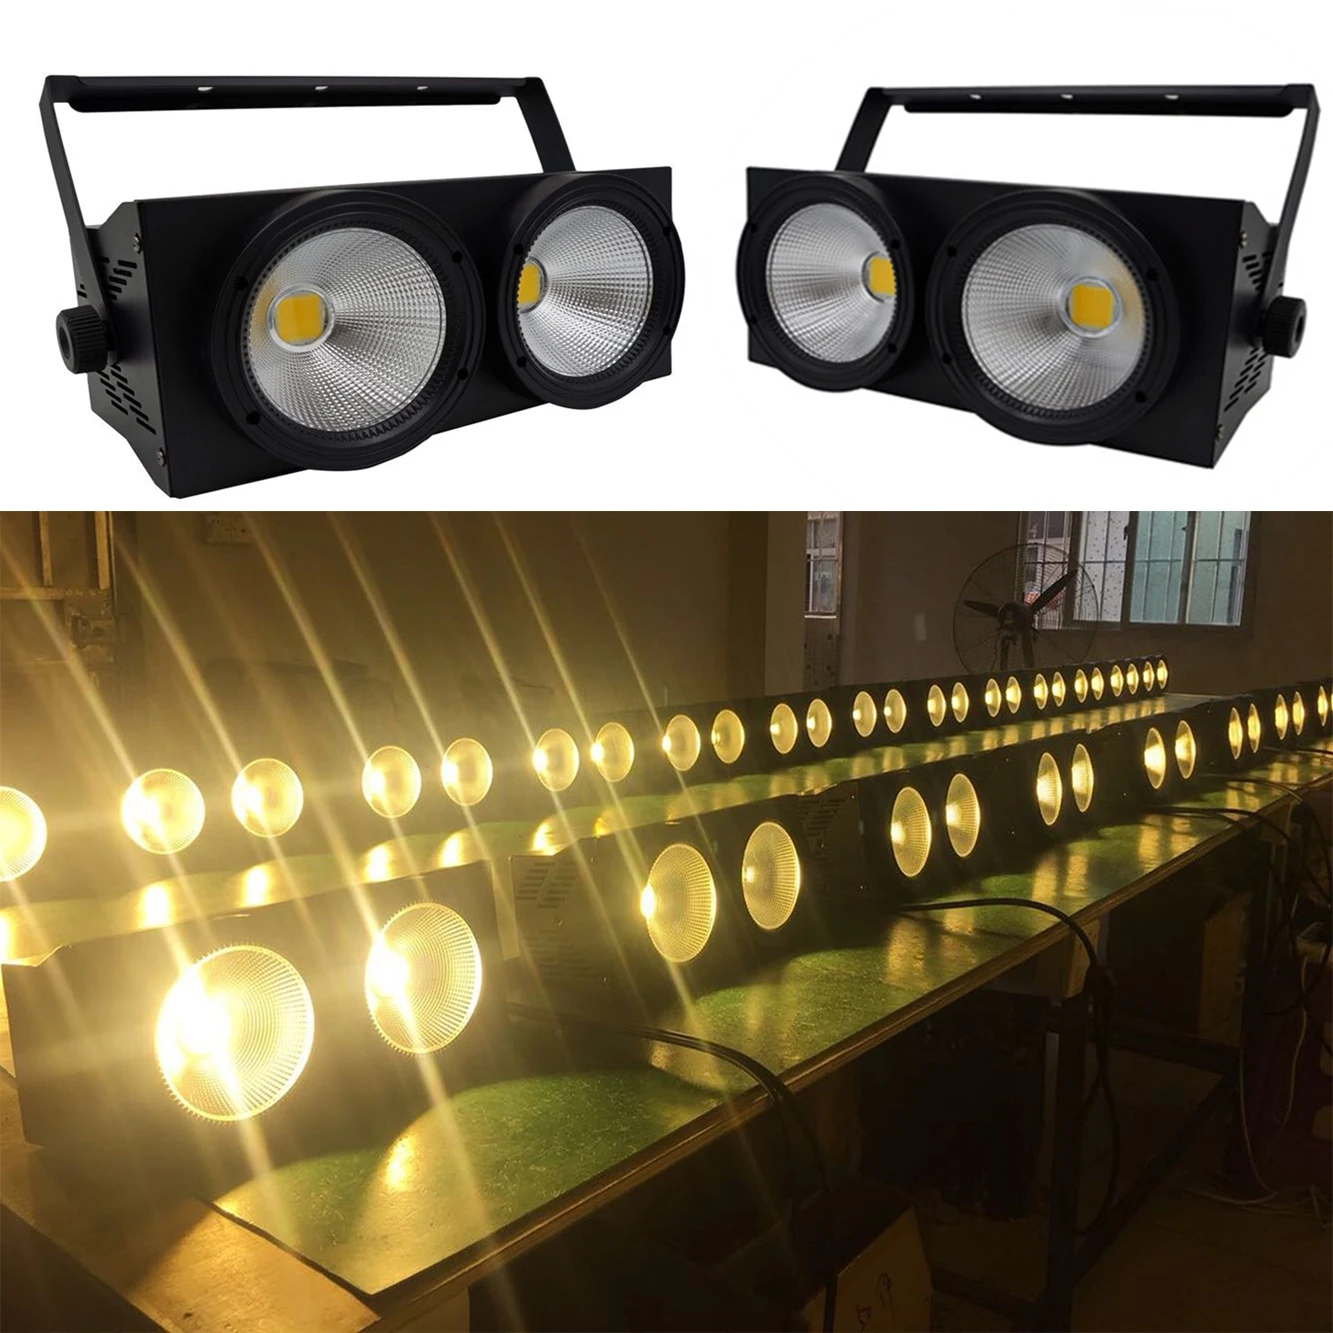 

Cob Wash audience light 2 eyes flood light 2x100w led matrix blind dmx light Par stage Uplighting for DJ disco concert